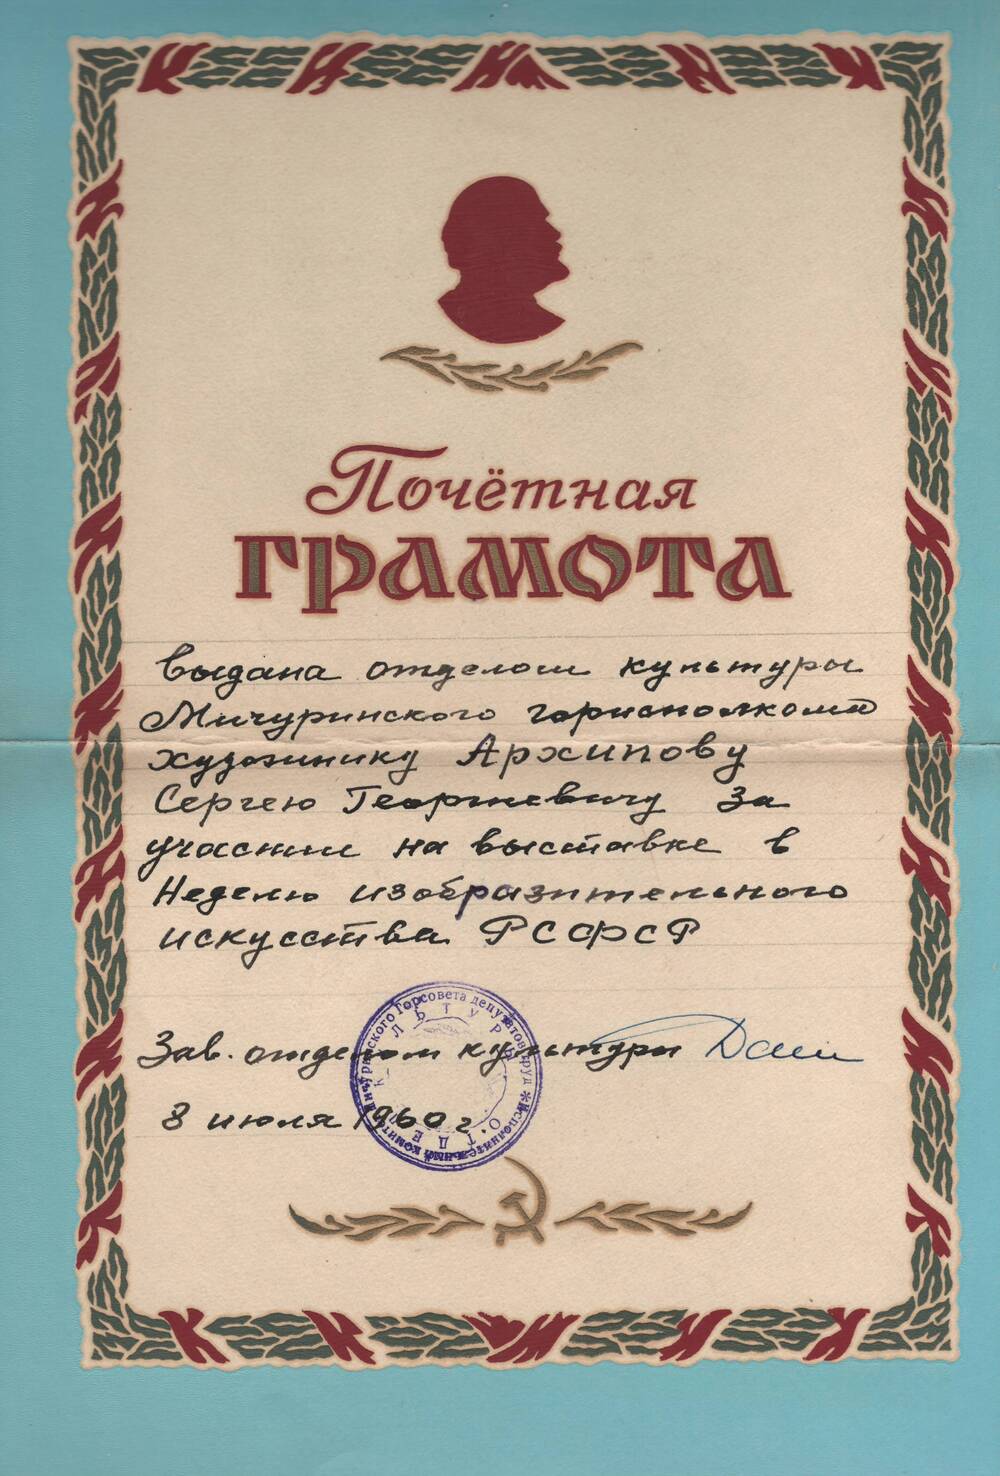 Почетная грамота Архипова С.Г.  за участие на выставке в Неделю изобразительного искусства РСФСР.